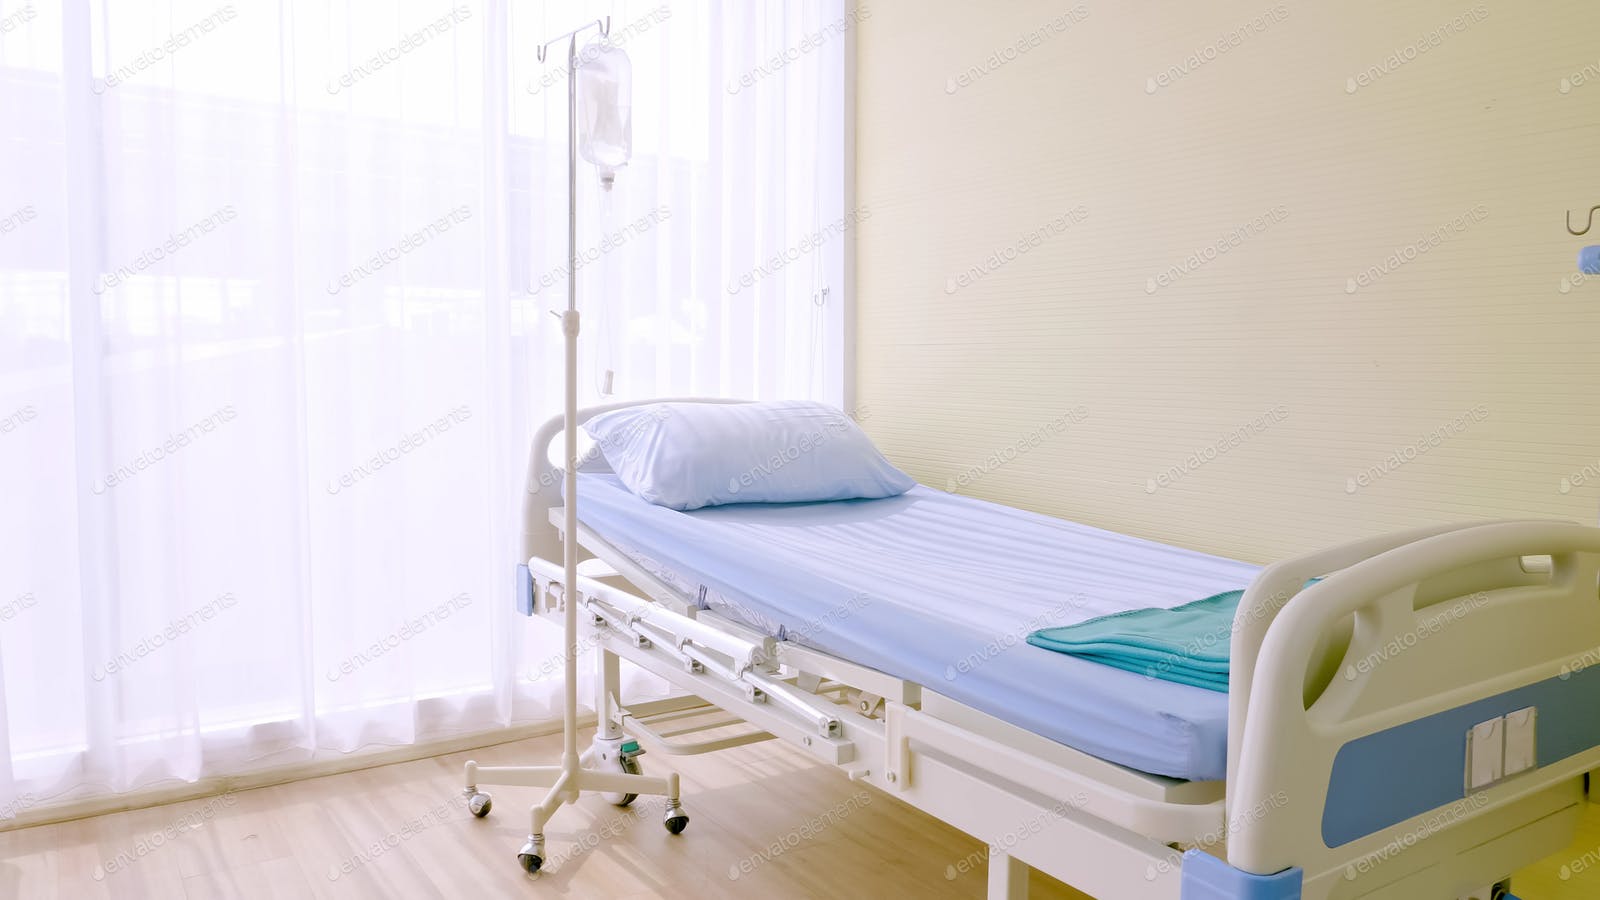 Hospital Bed Background